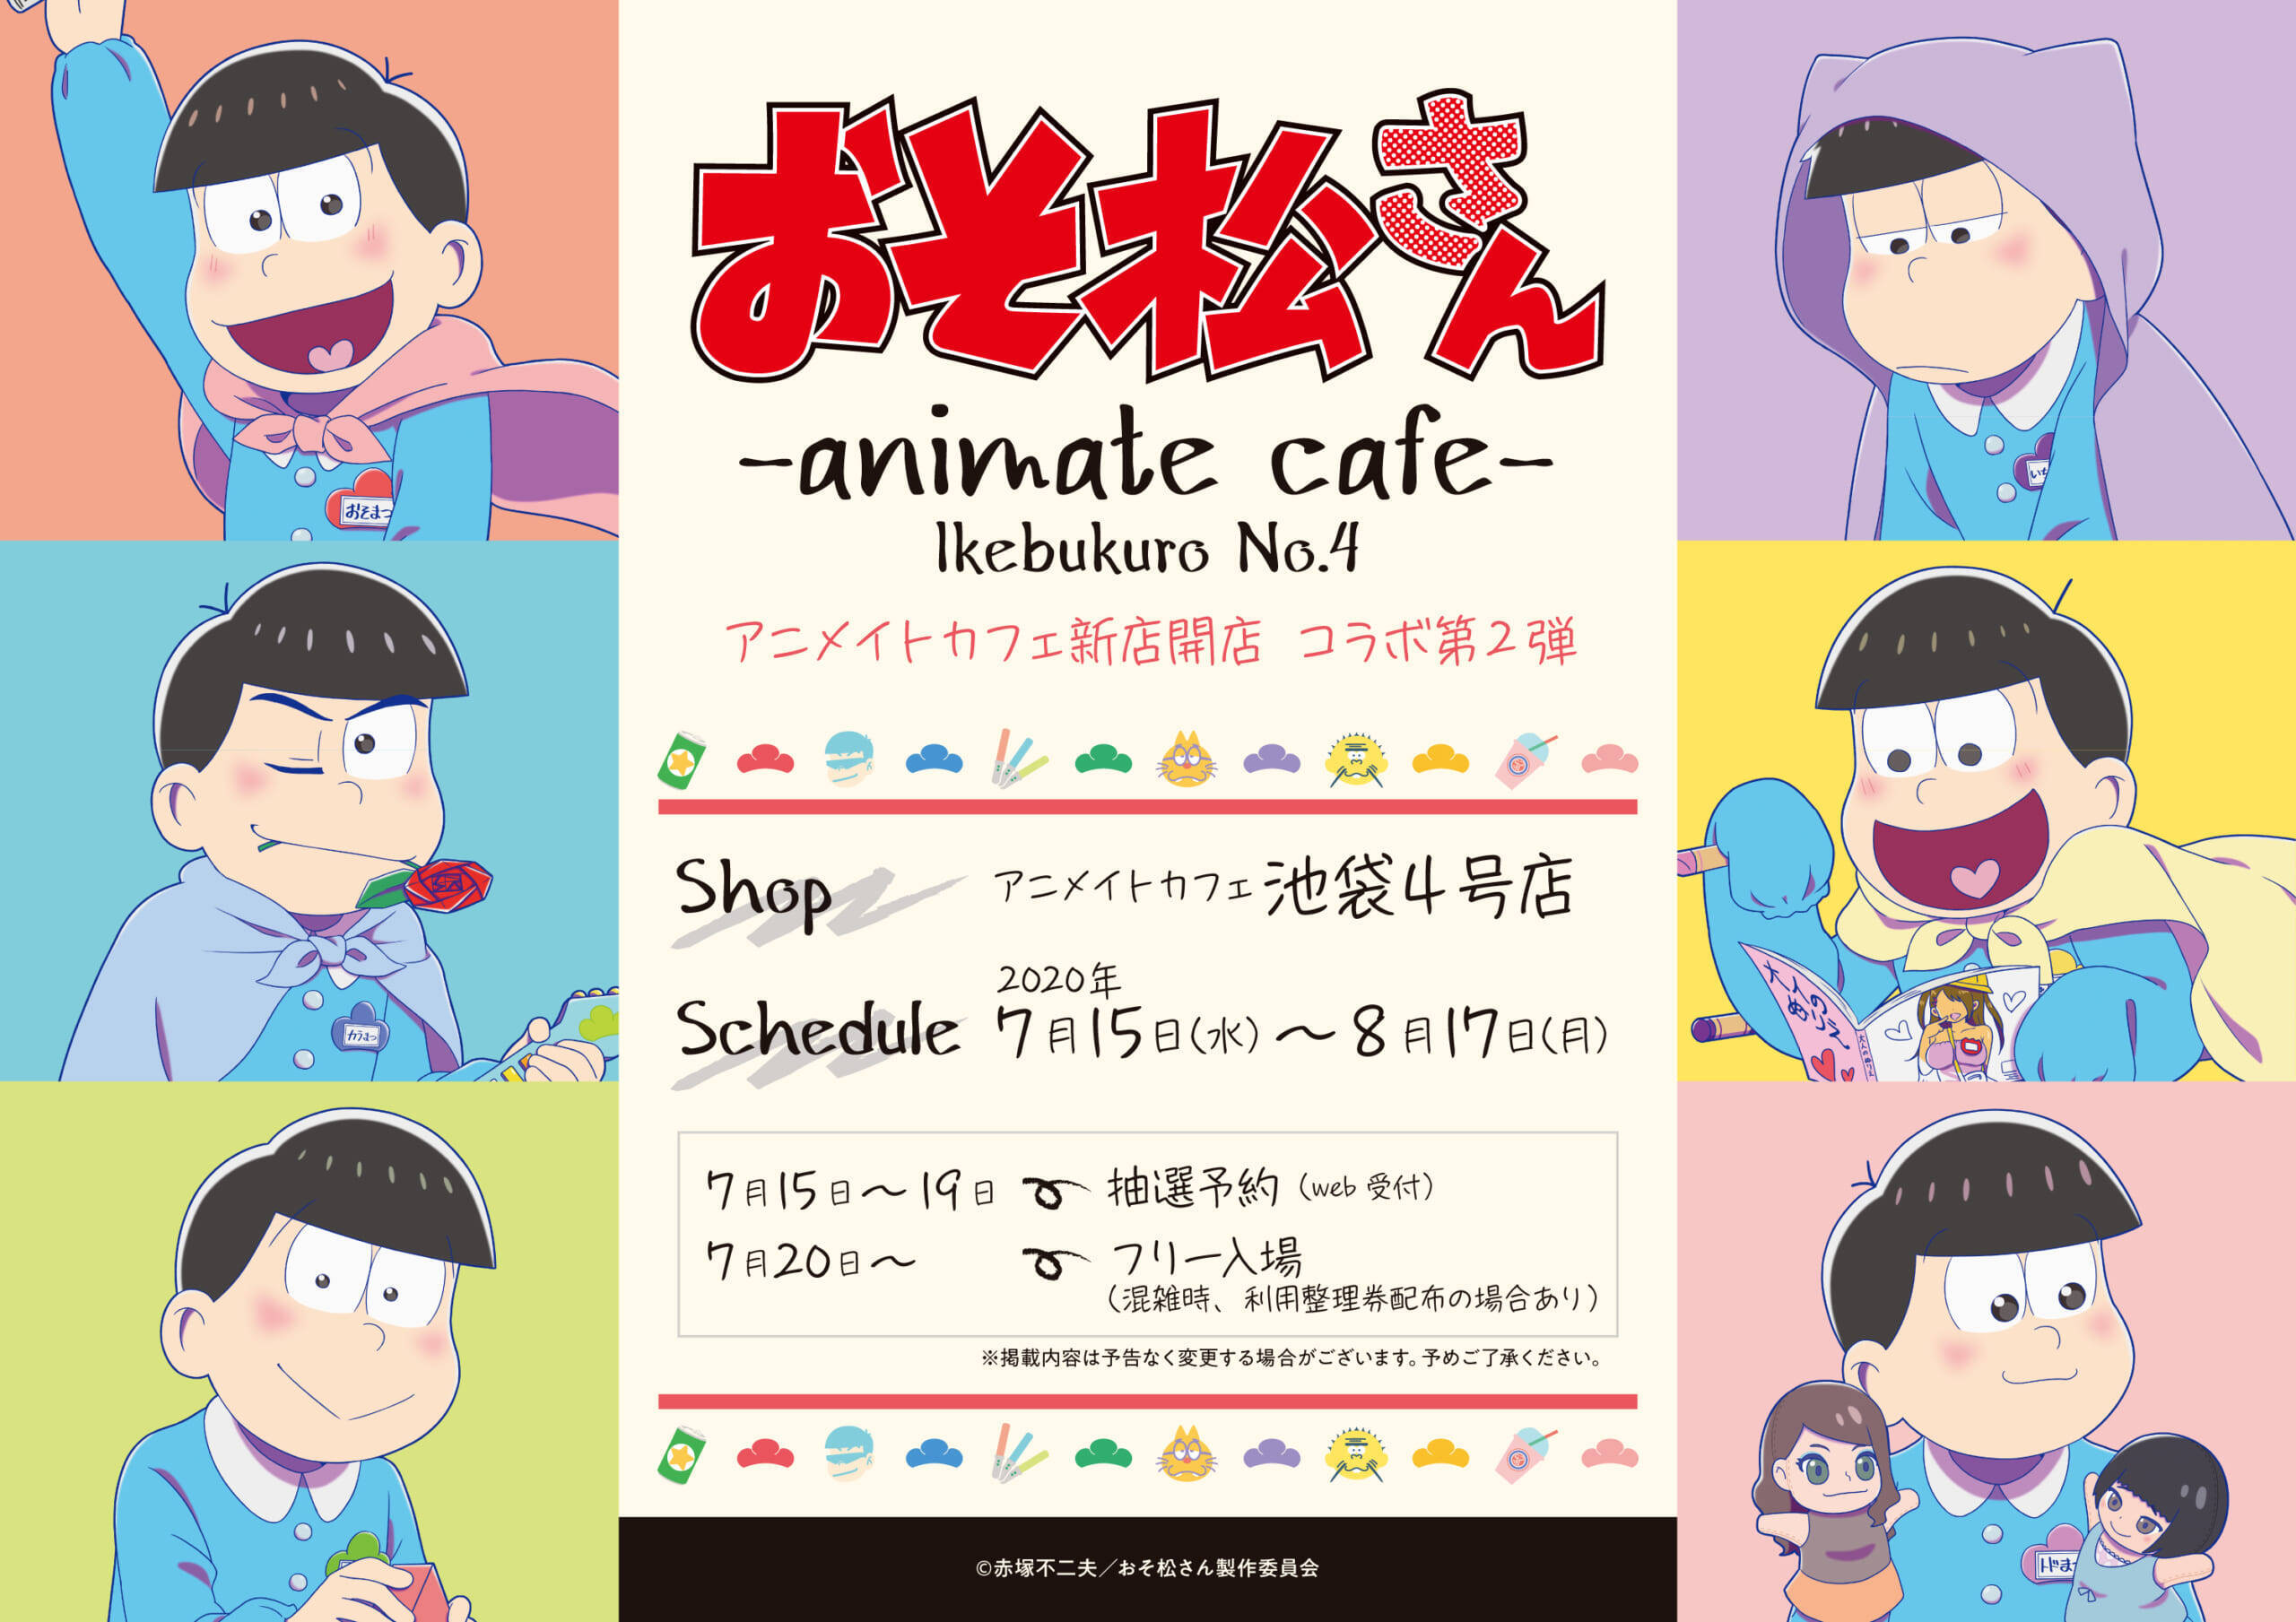 おそ松さん X アニメイトカフェ 幼稚園がテーマの描き下ろし公開 ドリンクメニュー グッズの販売も 2020年6月5日 エキサイトニュース